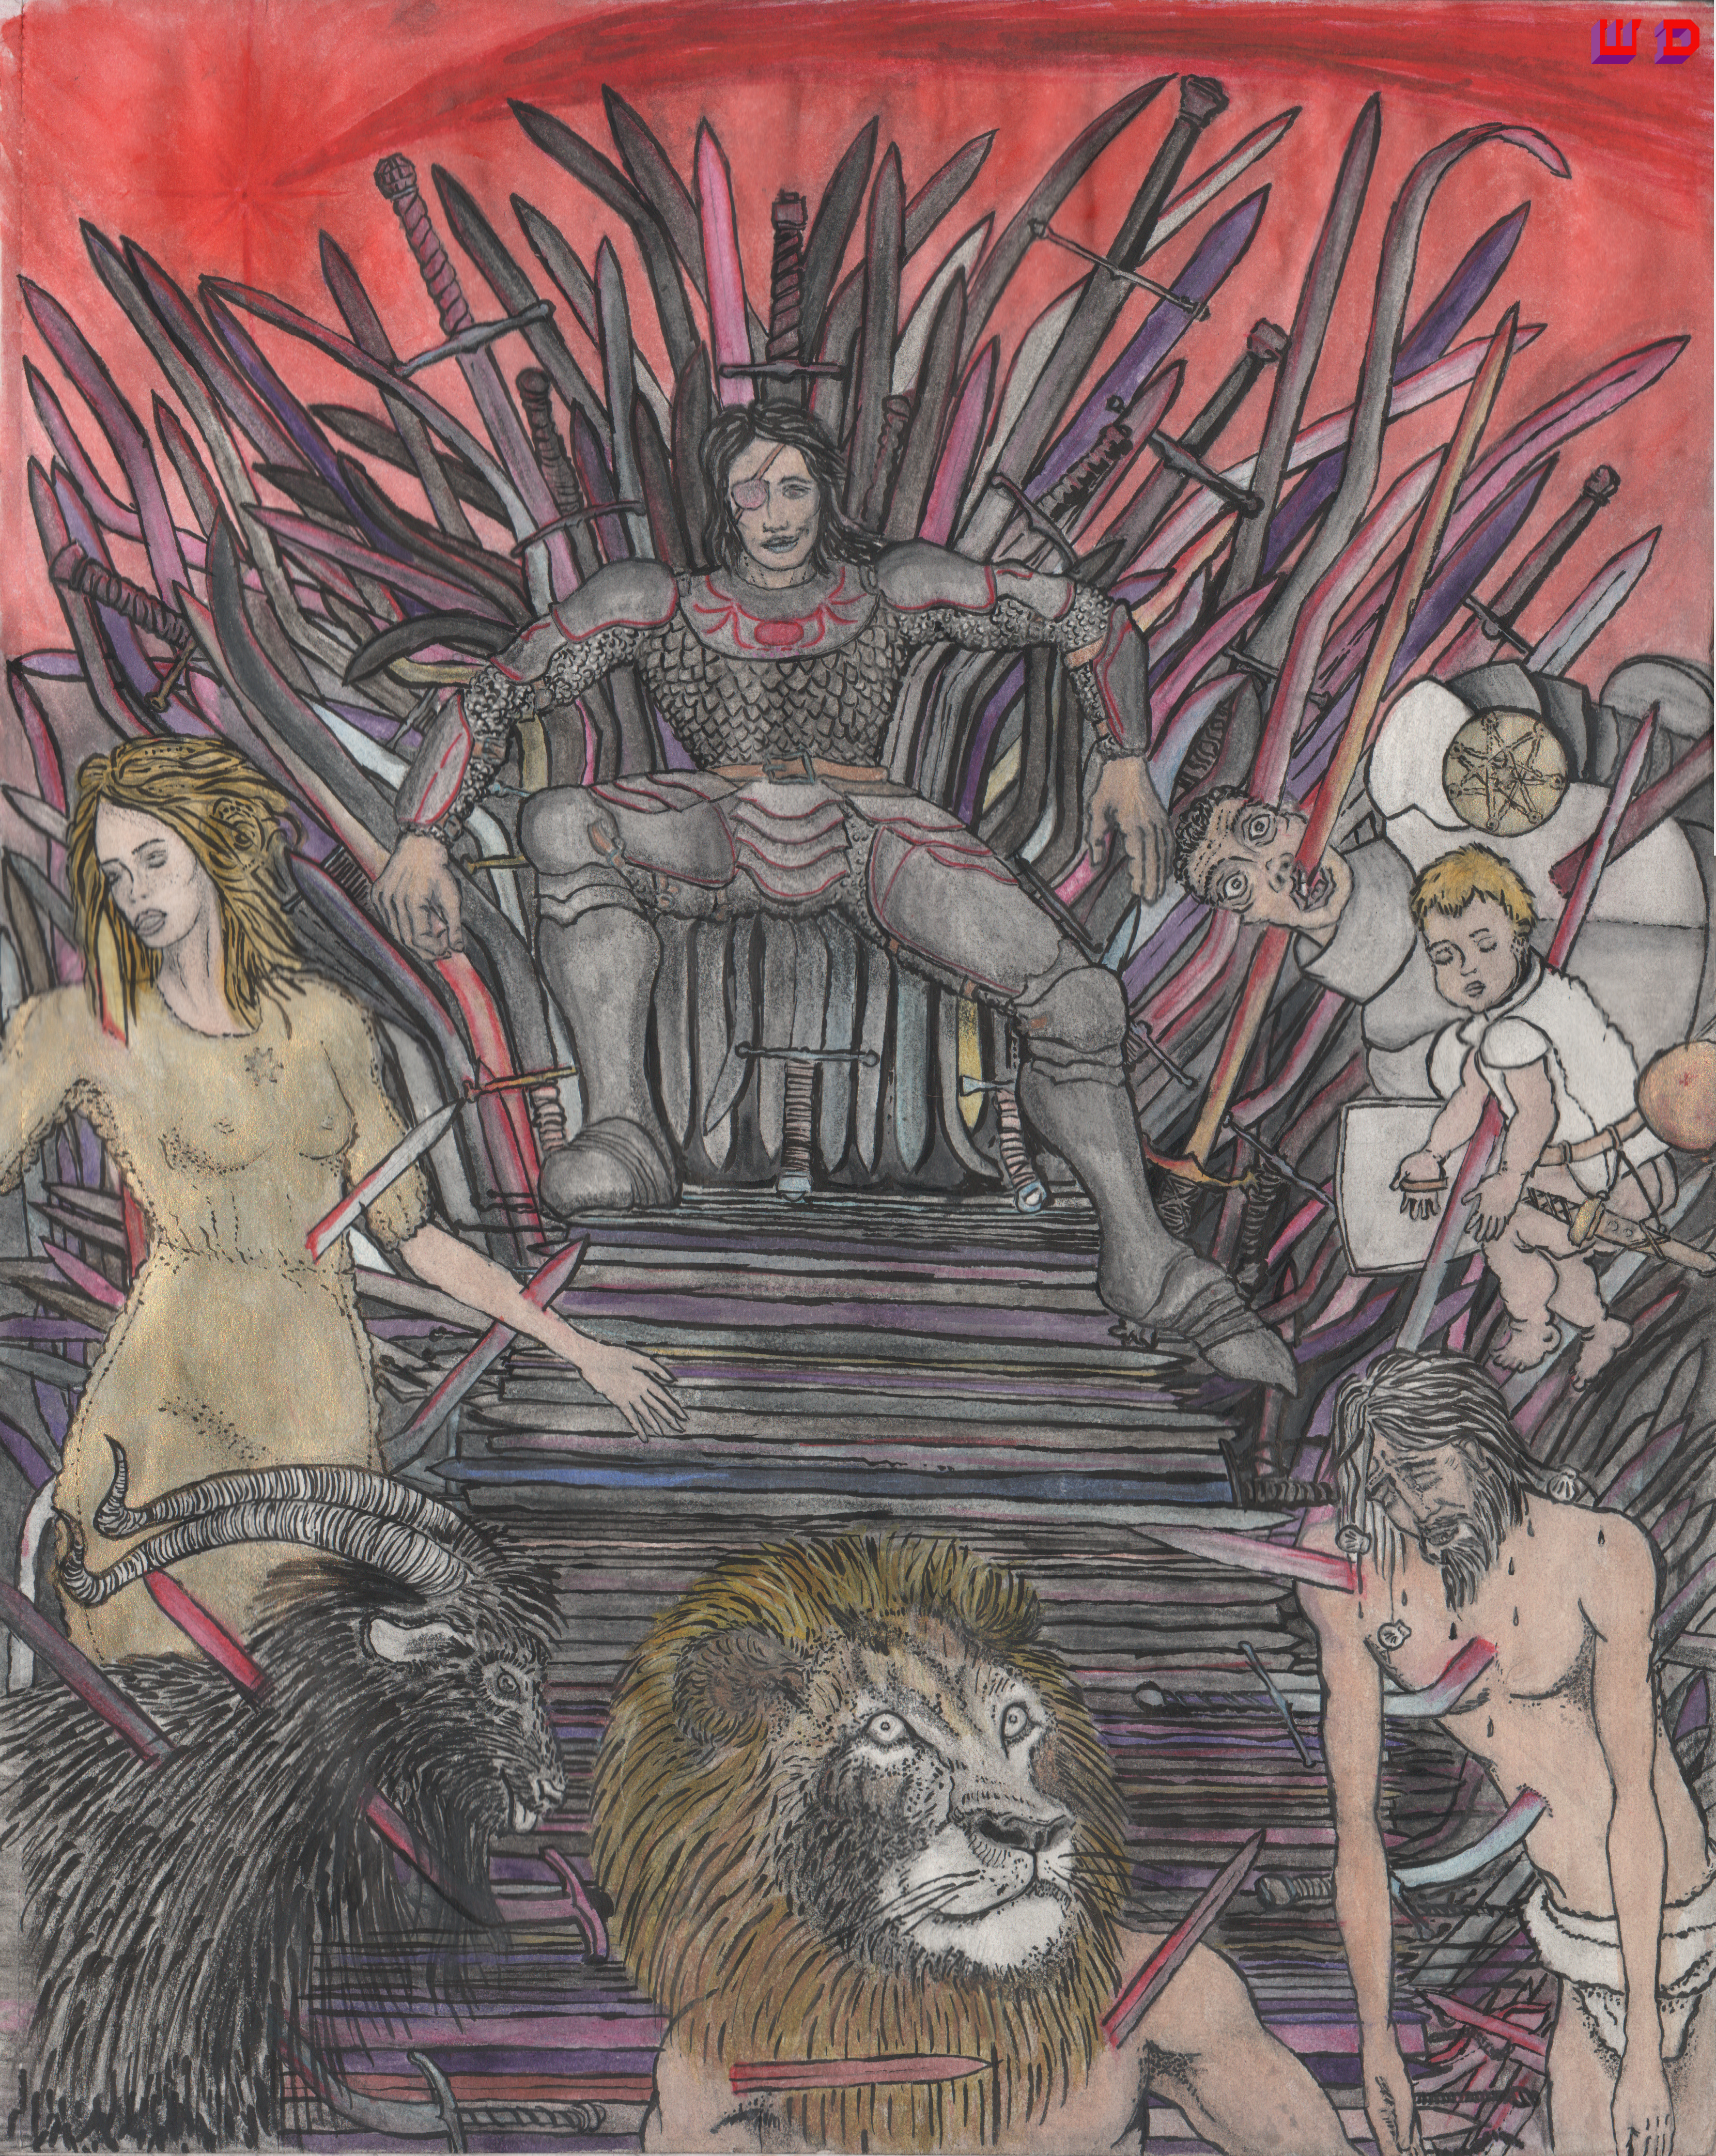 Euron Greyjoy seated on the Iron Throne